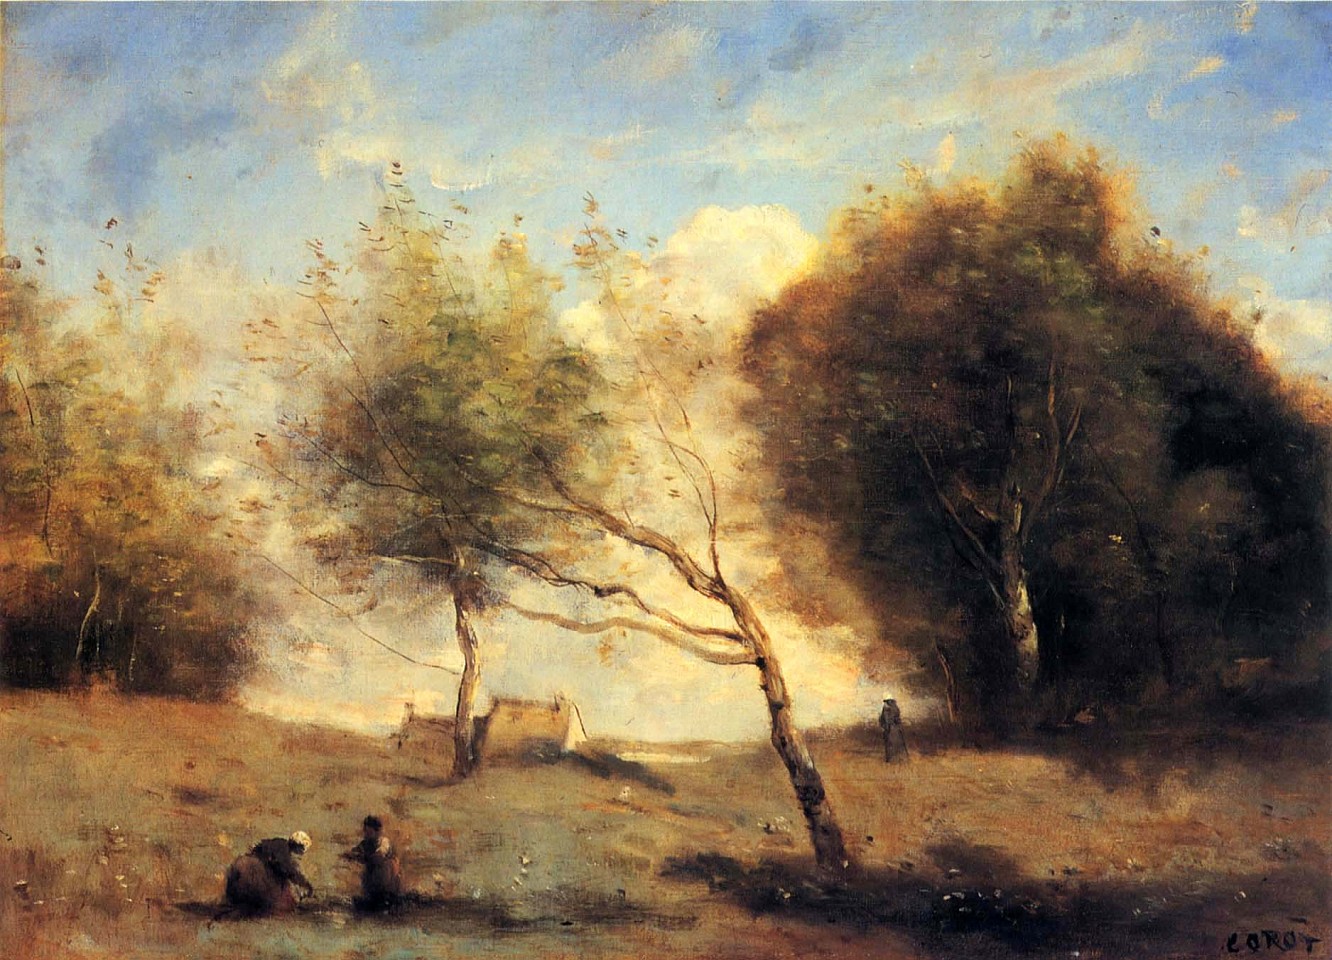 Jean Baptiste Camille Corot, Les PrÃ©s de la Petite Ferme, 1860-1870
Oil on canvas, 12 3/8 x 18 3/16 in. (33 x 46.3 cm)
COR-001-PA
$176,000